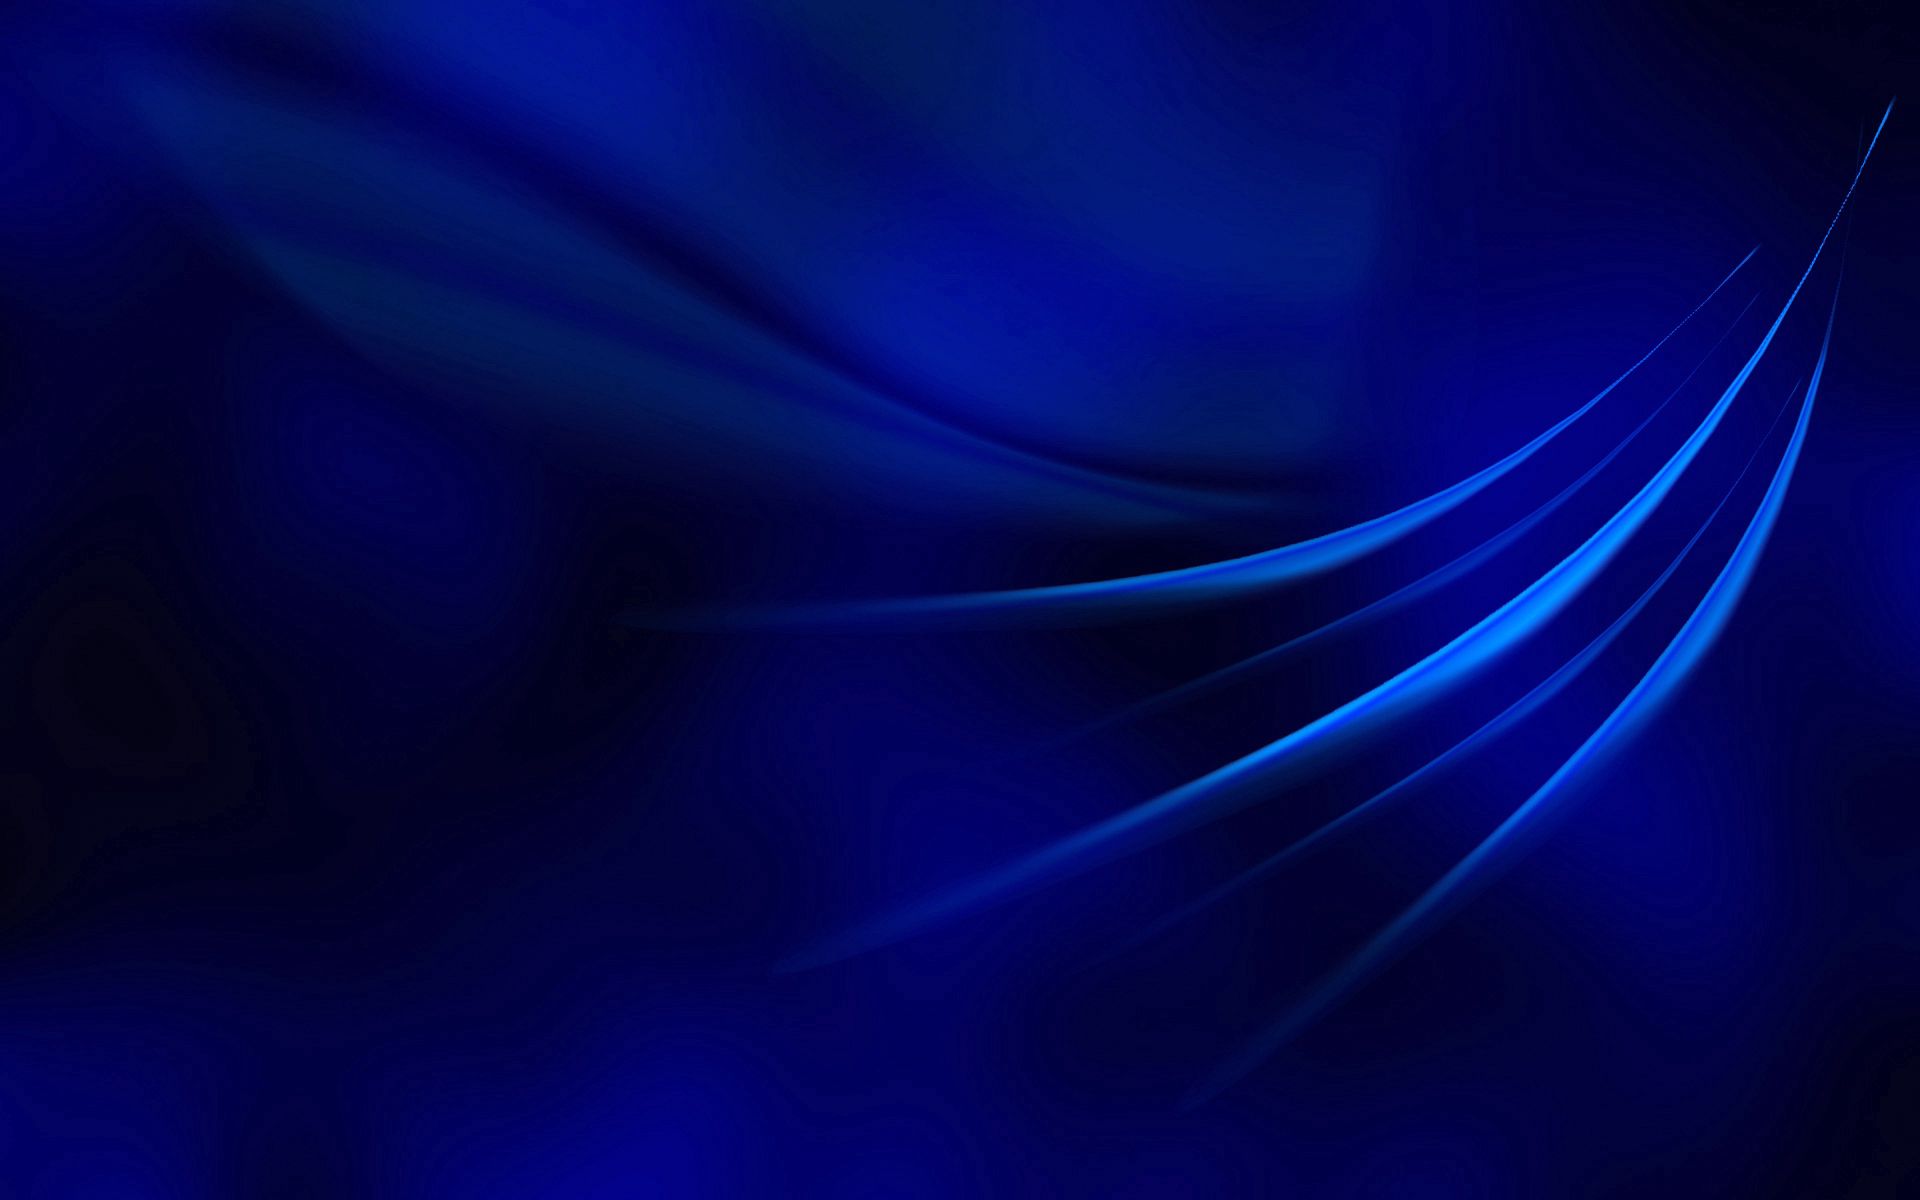 Hình nền Blue Lines - Sự kết hợp độc đáo giữa màu xanh dương và các đường kẻ sẽ làm cho màn hình điện thoại của bạn trở nên nổi bật và đẳng cấp. Họa tiết đơn giản nhưng tạo nên sự thu hút của \